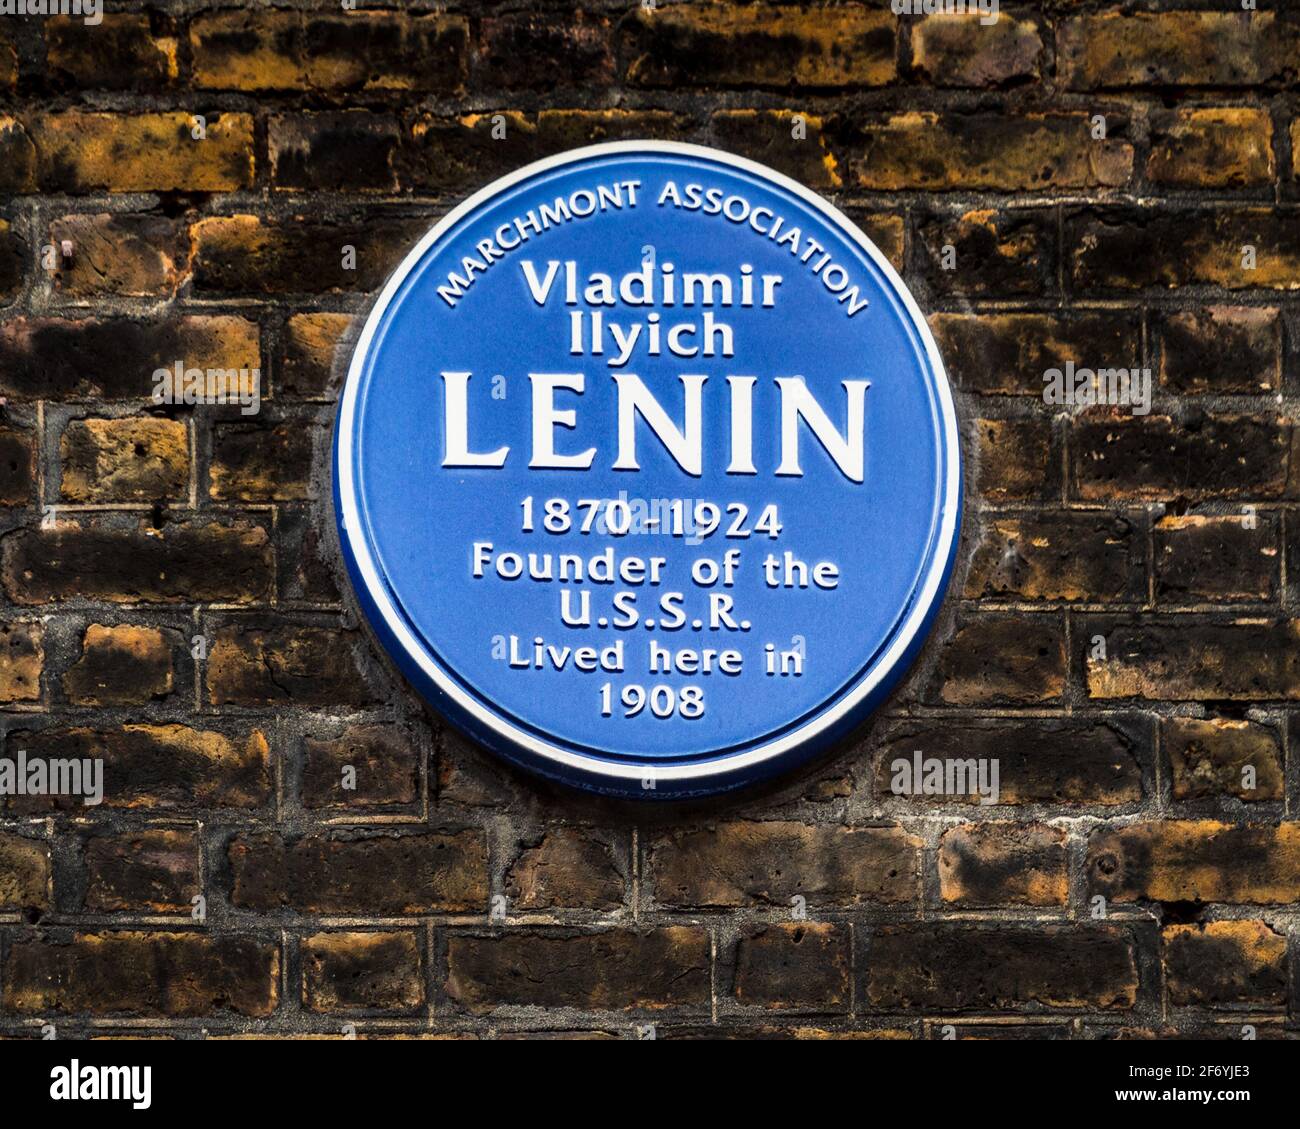 Plaque bleue Lenin London - plaque bleue indiquant que Vladimir Ilyich Lénine vivait à 36 Tavistock Place en 1908. Banque D'Images